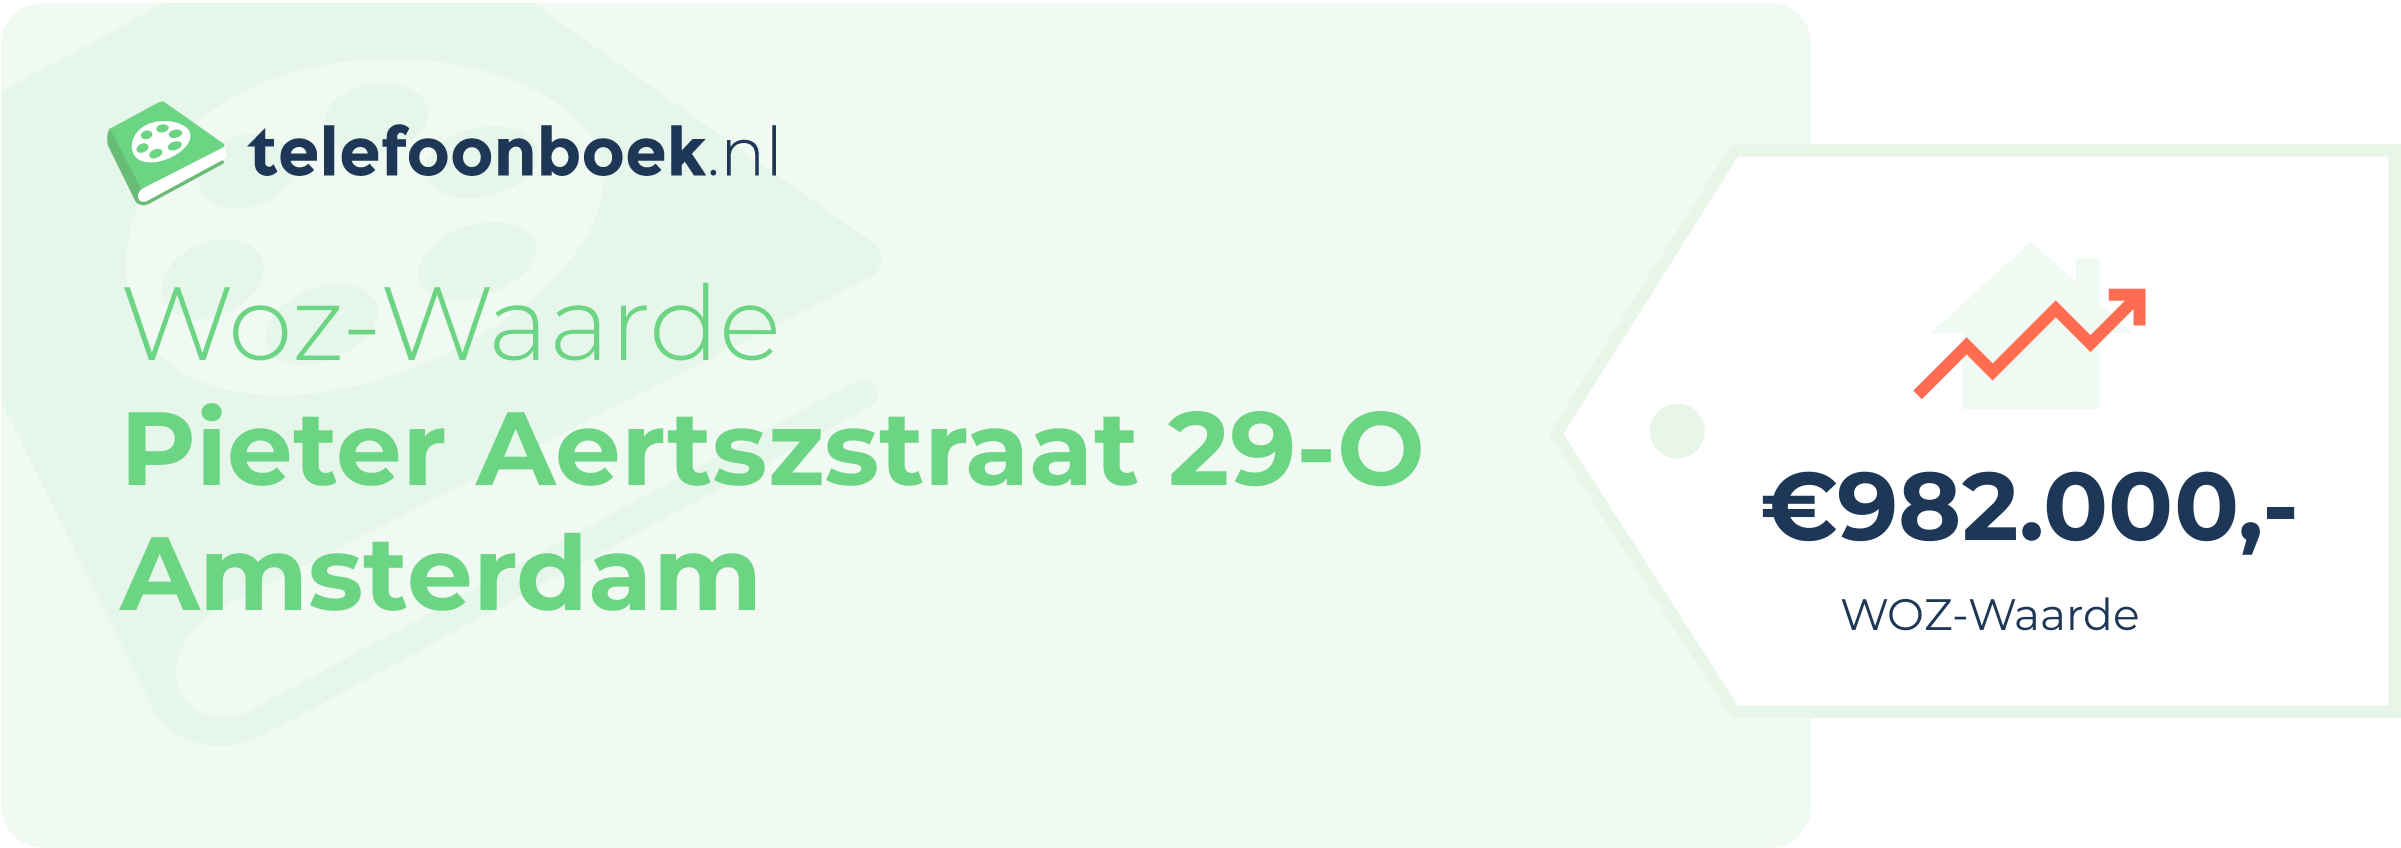 WOZ-waarde Pieter Aertszstraat 29-O Amsterdam